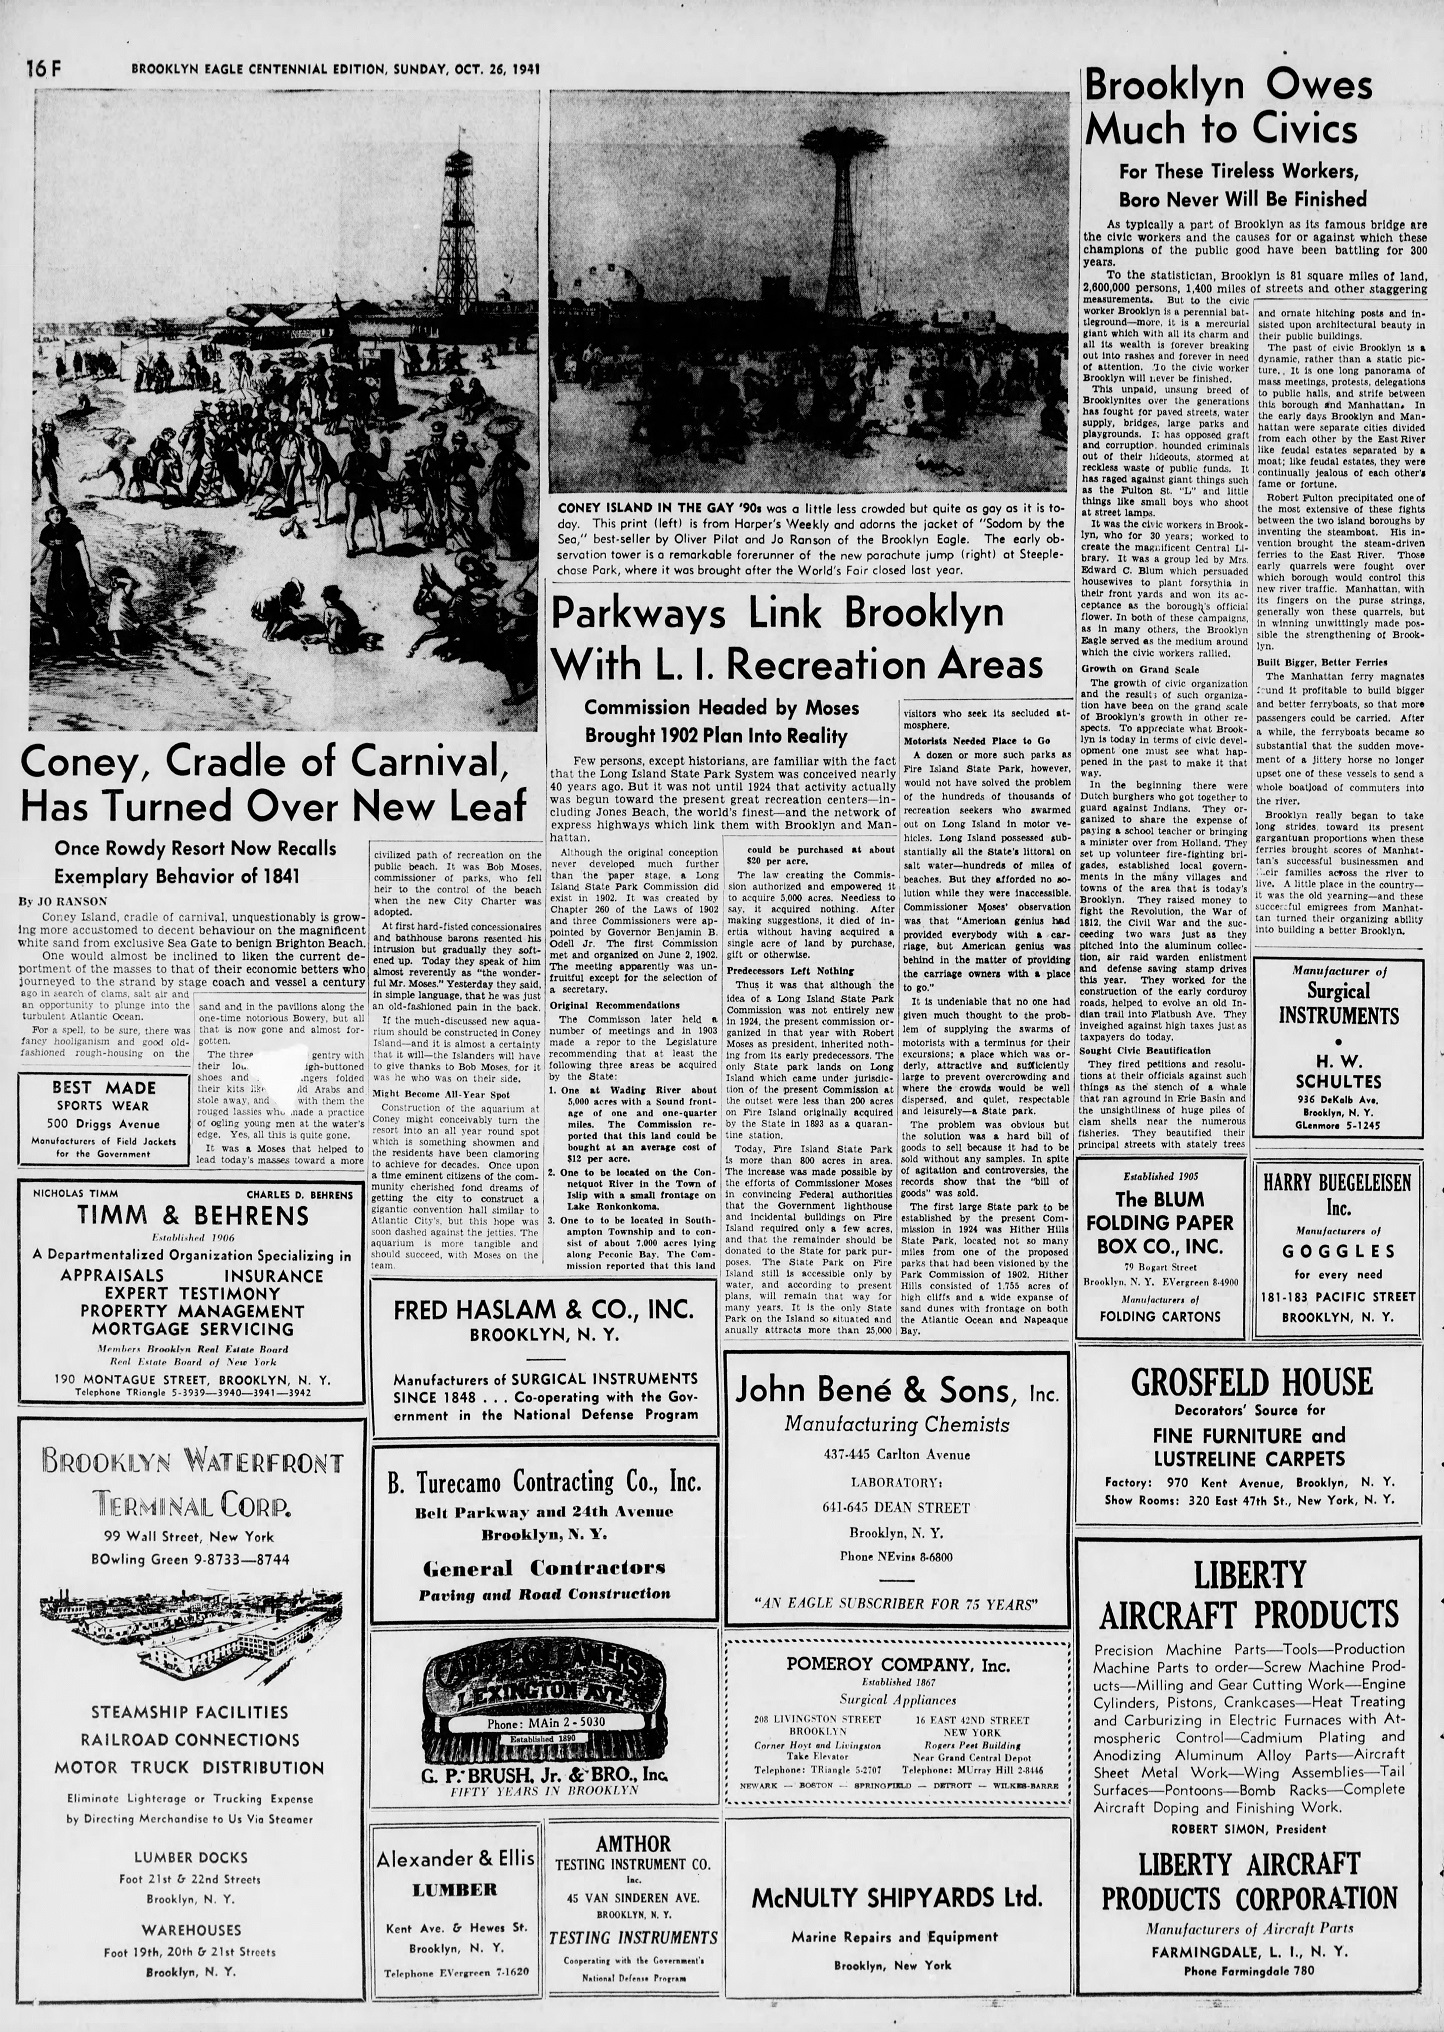 The_Brooklyn_Daily_Eagle_Sun__Oct_26__1941_(14).jpg